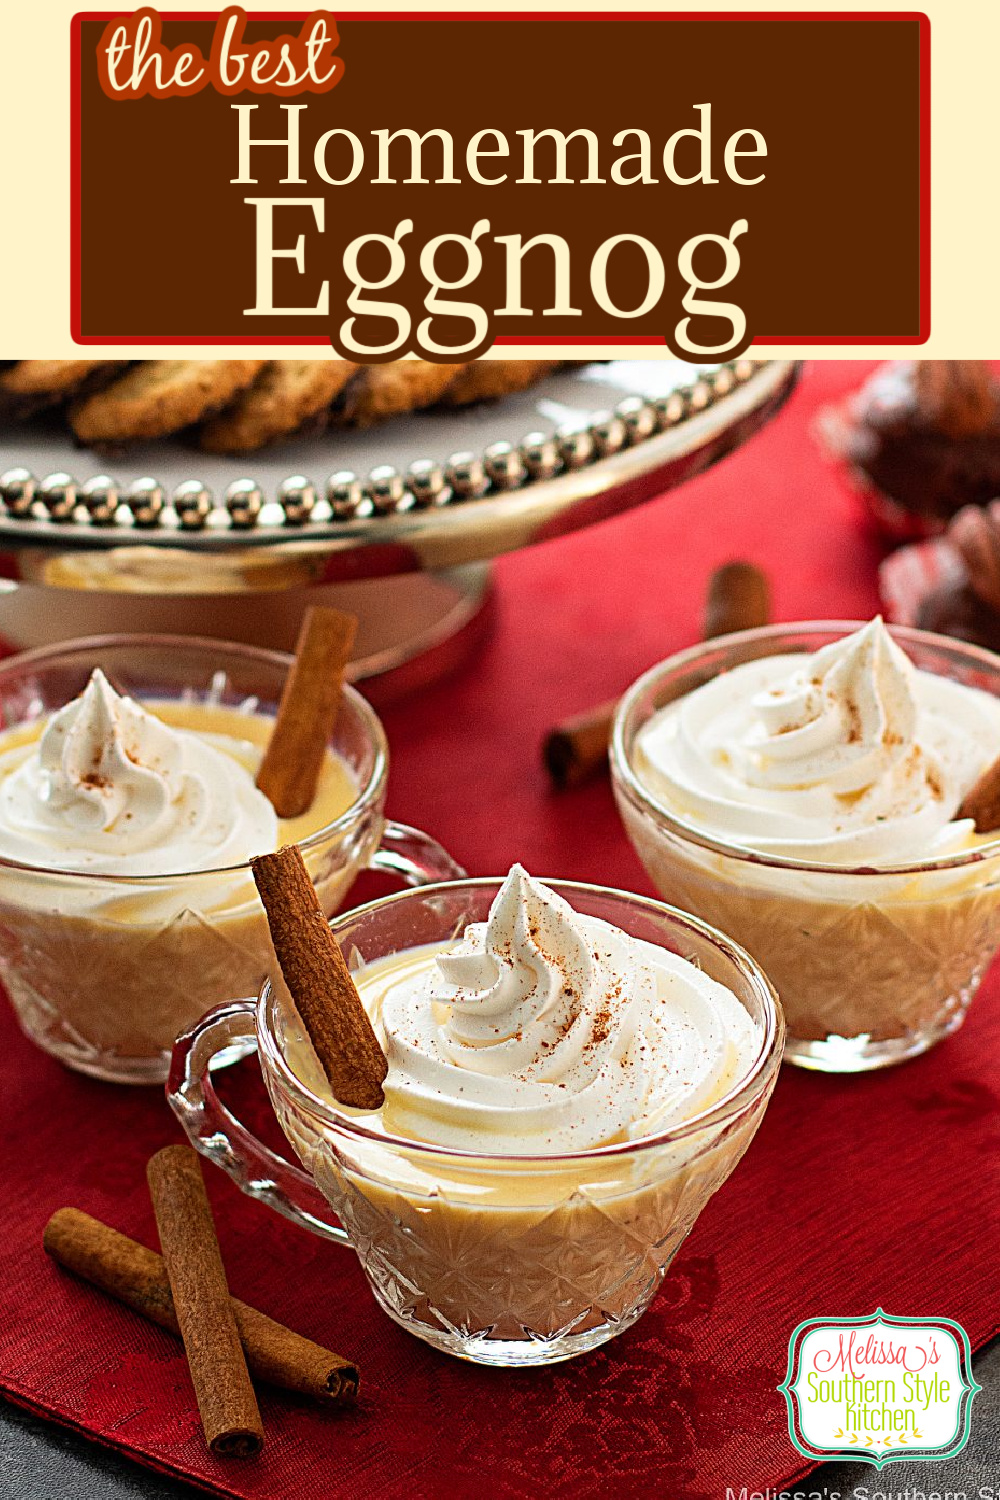 Treat the family to Homemade Eggnog this holiday season #eggnog #homemadeeggnog #besteggnogrecipes #drinks #Christmasrecipes #holidayrecipes #southernfood #southernrecipes #punch #Christmaspunch